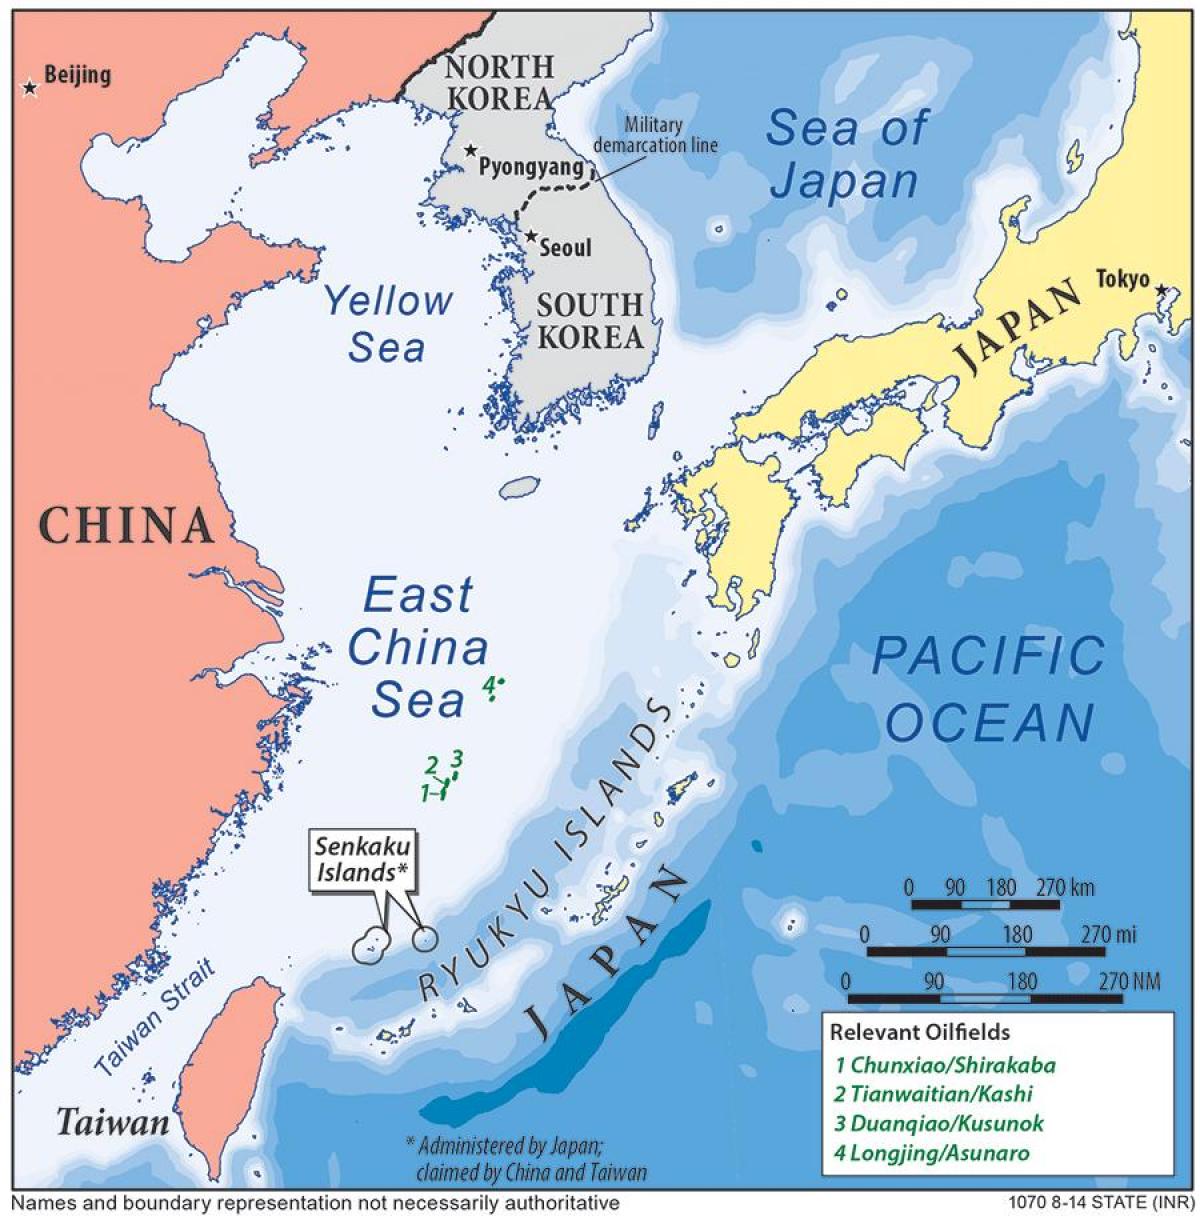 แผนที่ของทางตะวันออกประเทศจีนทะเล